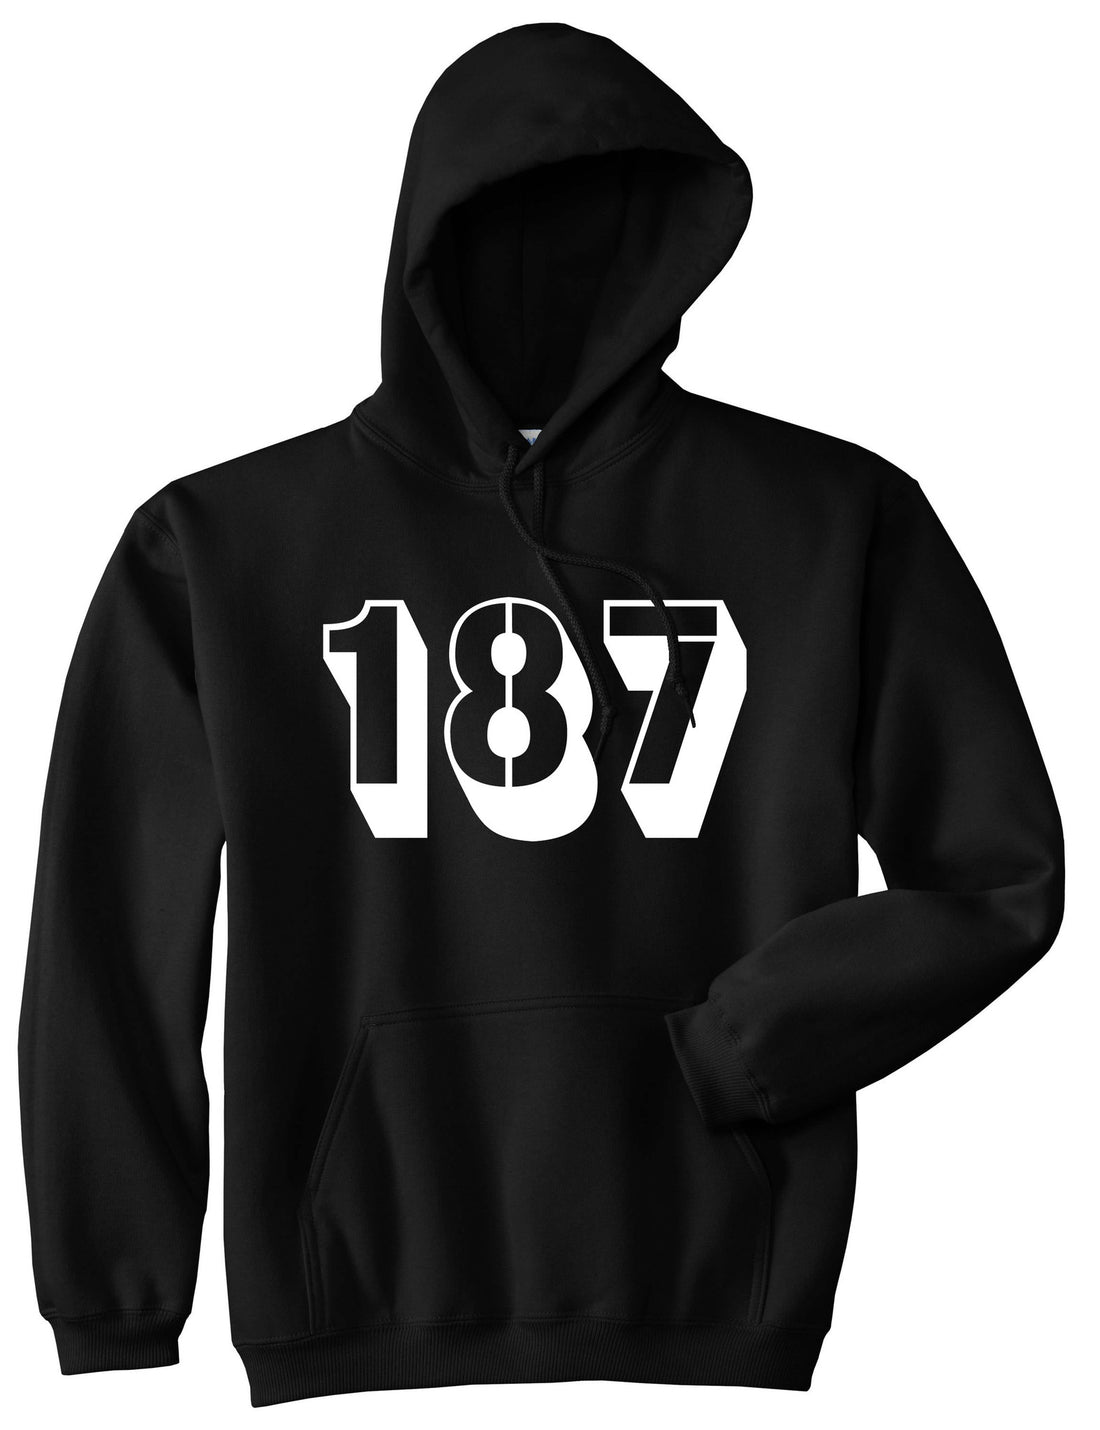 187 Pullover Hoodie Hoody in Black by Kings Of NY